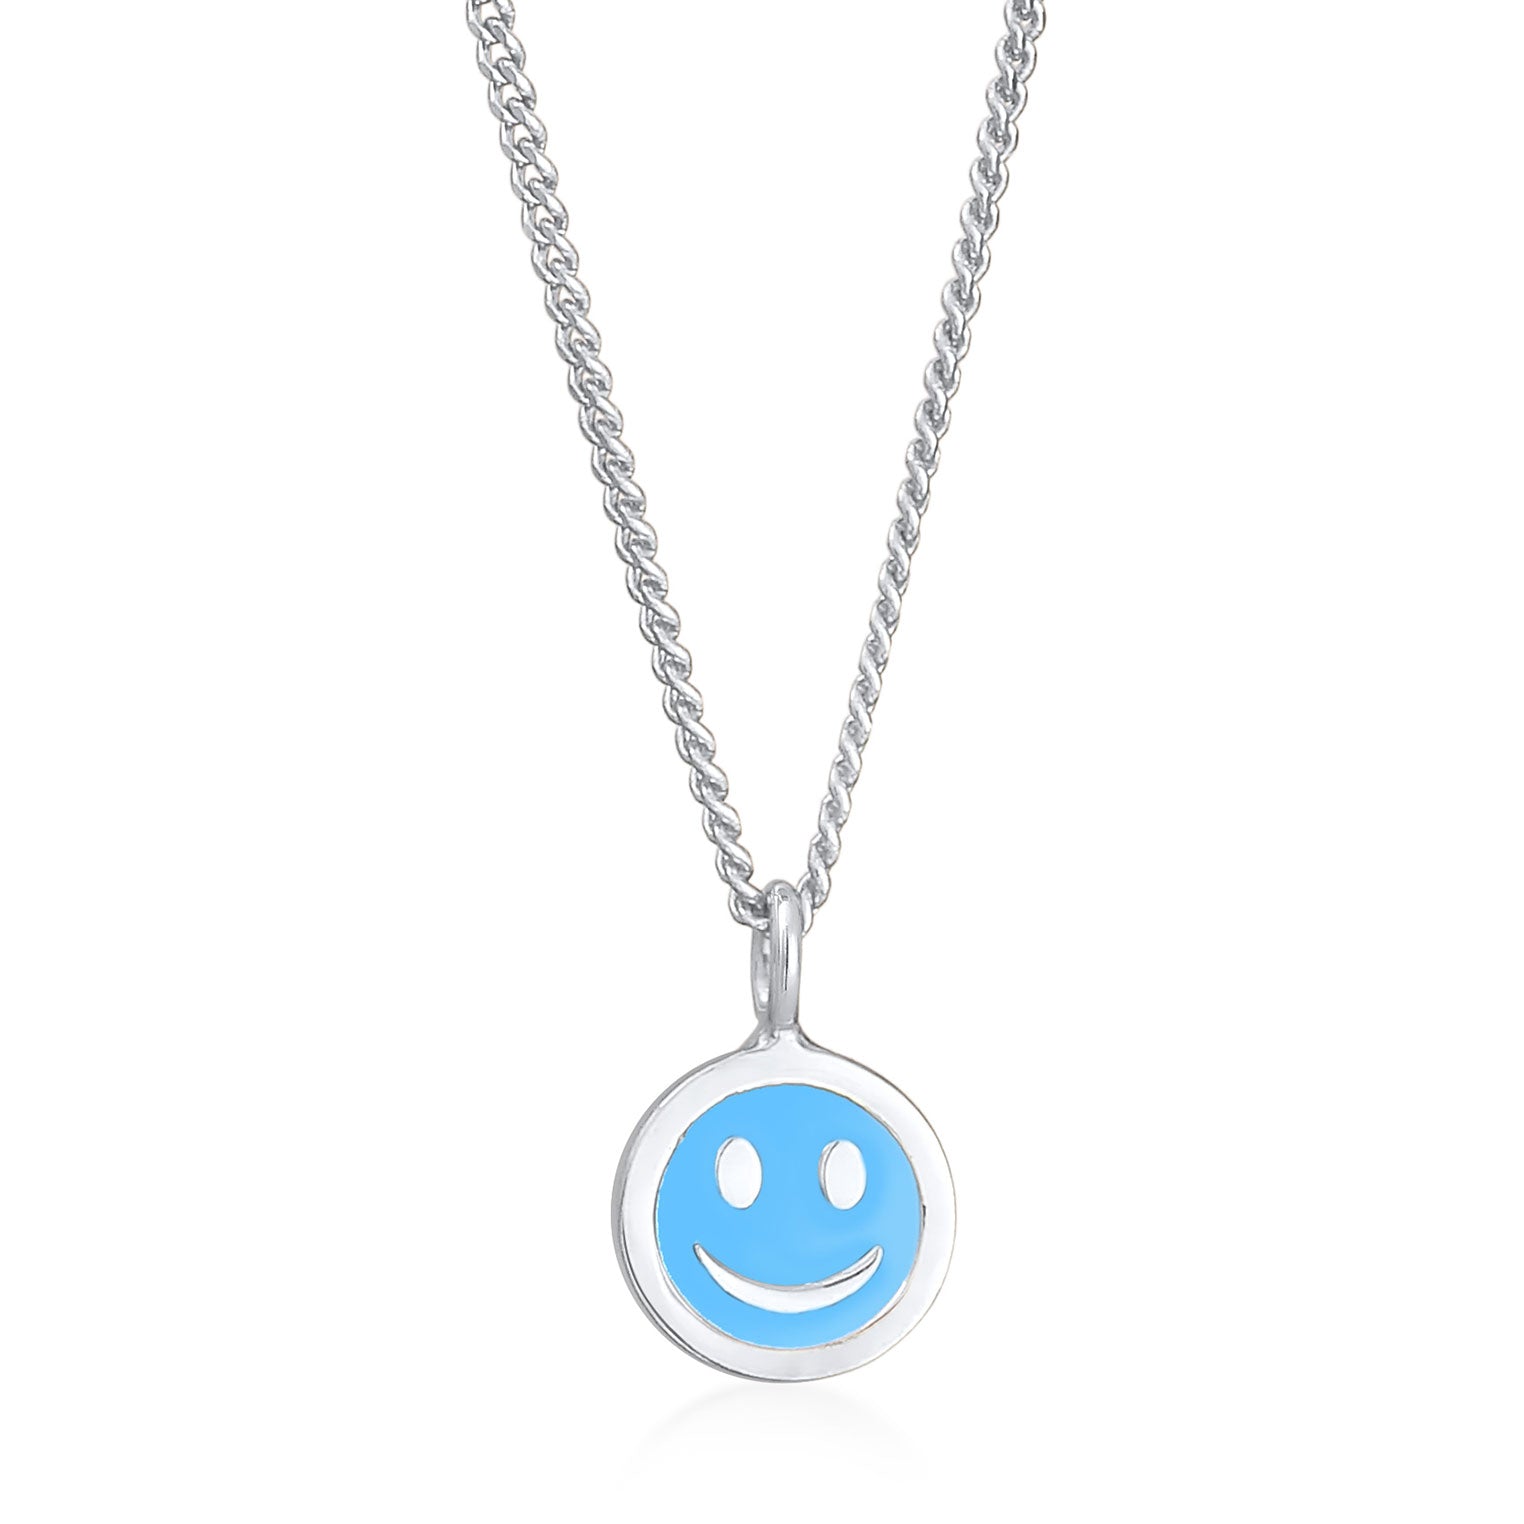 Hellblau - Elli | Halskette mit Smiling Face Anhänger | Emaille | 925er Sterling Silber